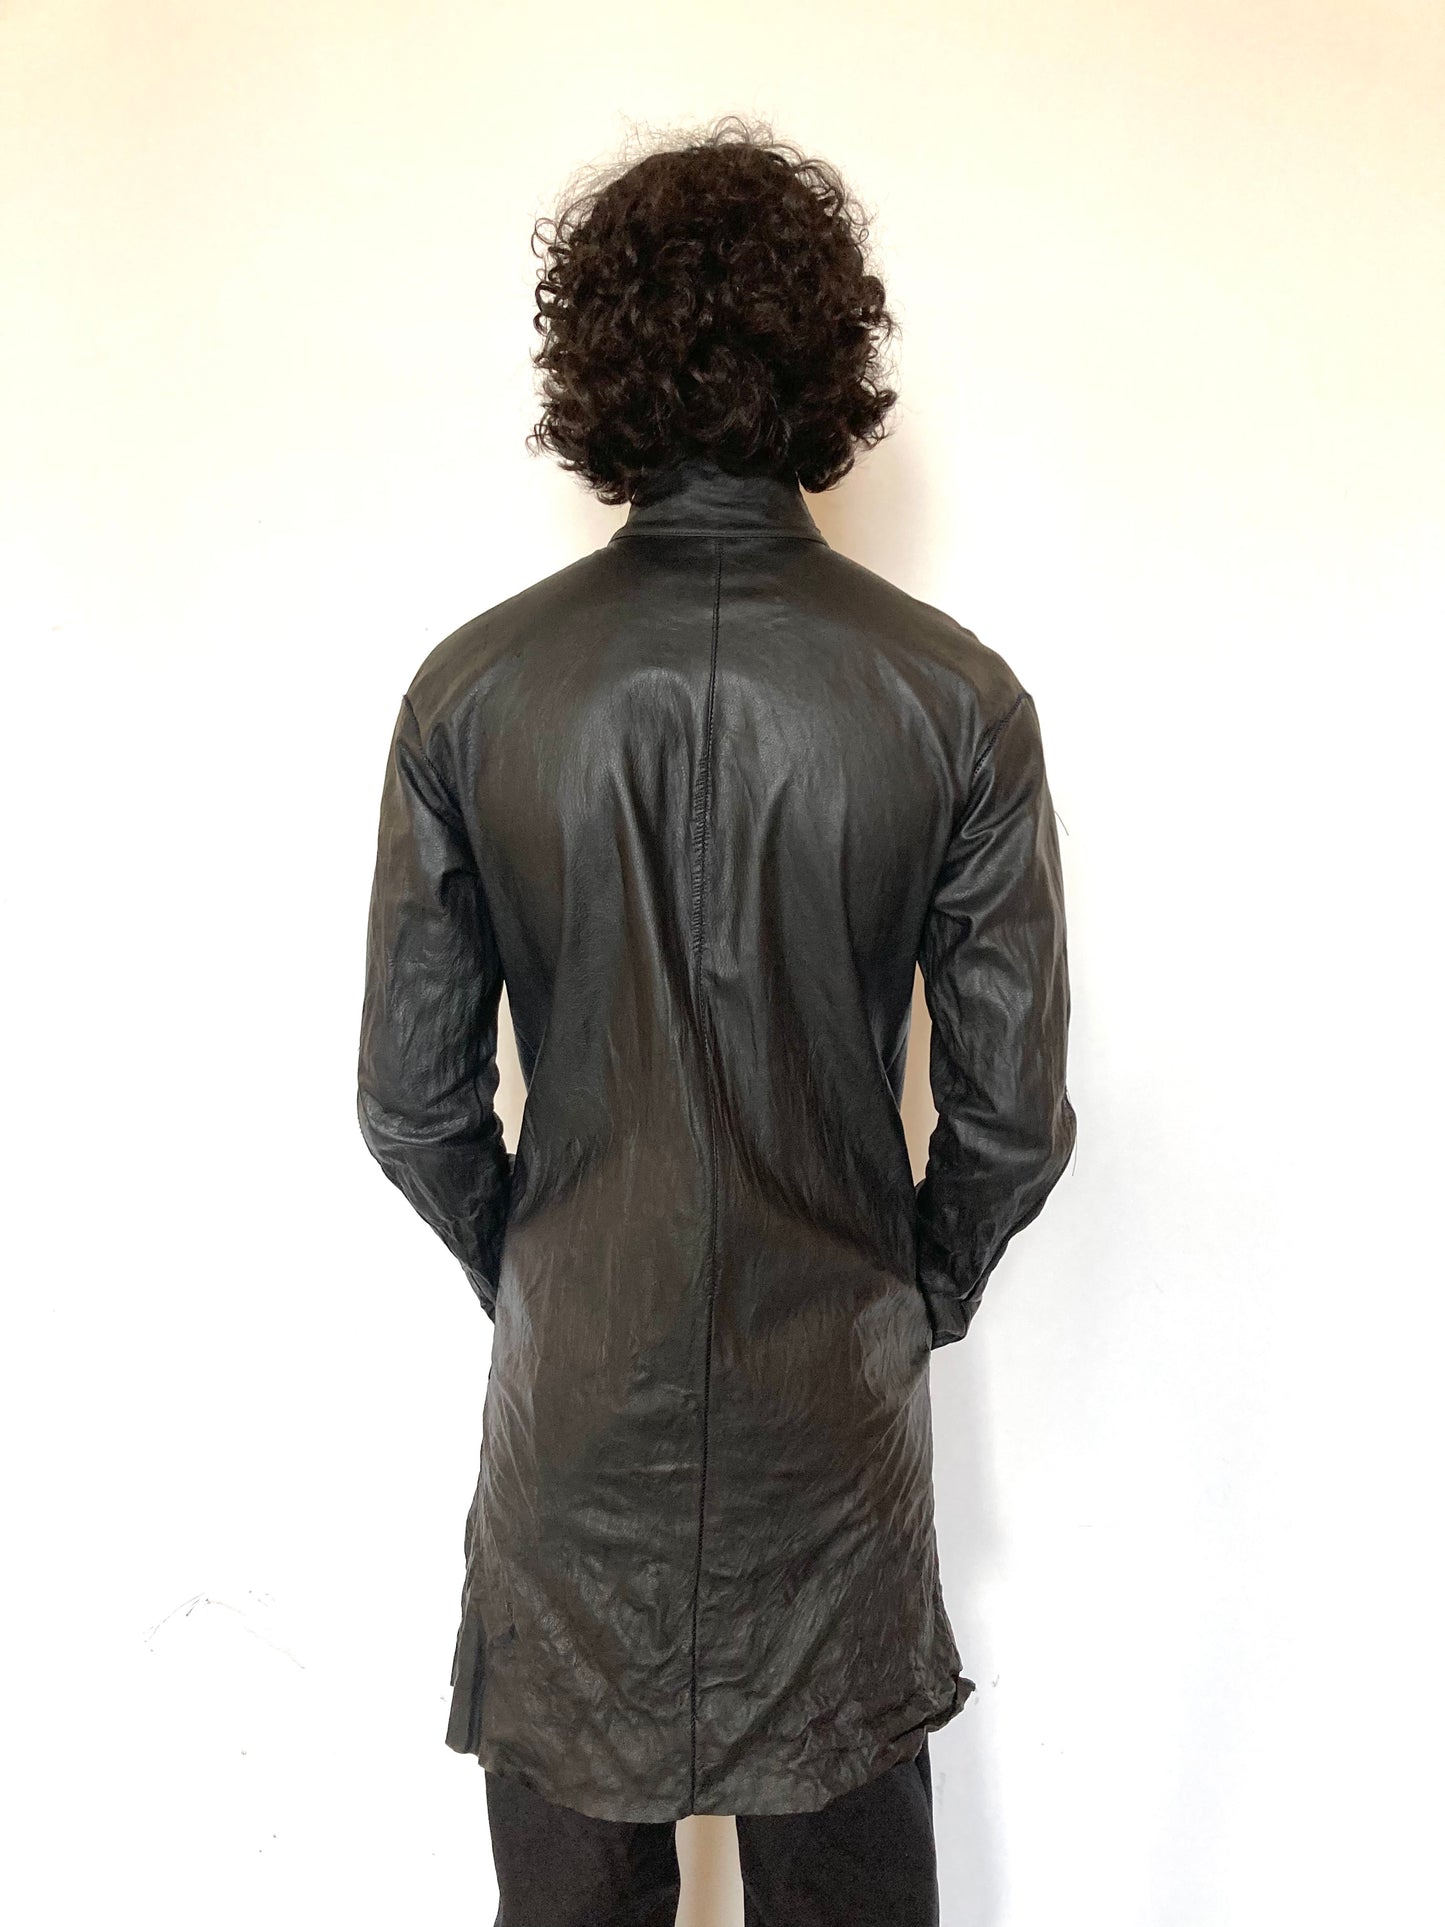 KNG13 || DARNSTITCHED FAULTED SHOULDER UNLINED SHIRT - BLACK COWHIDE ||